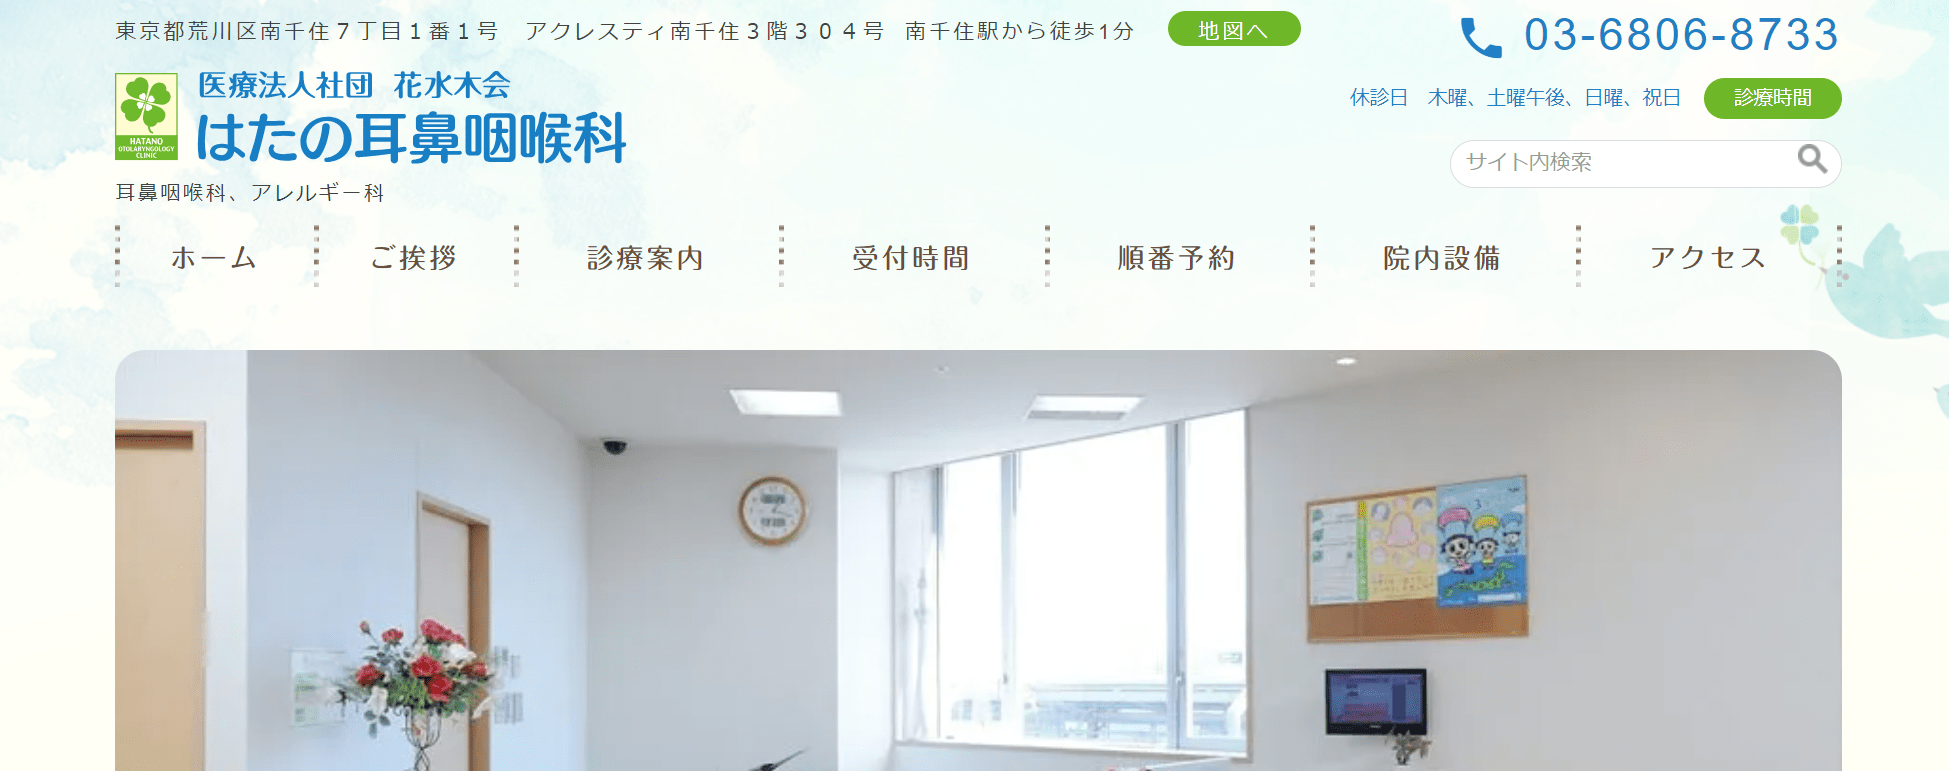 東京都で評判の耳鼻咽喉科クリニックおすすめ10選 はたの耳鼻咽喉科